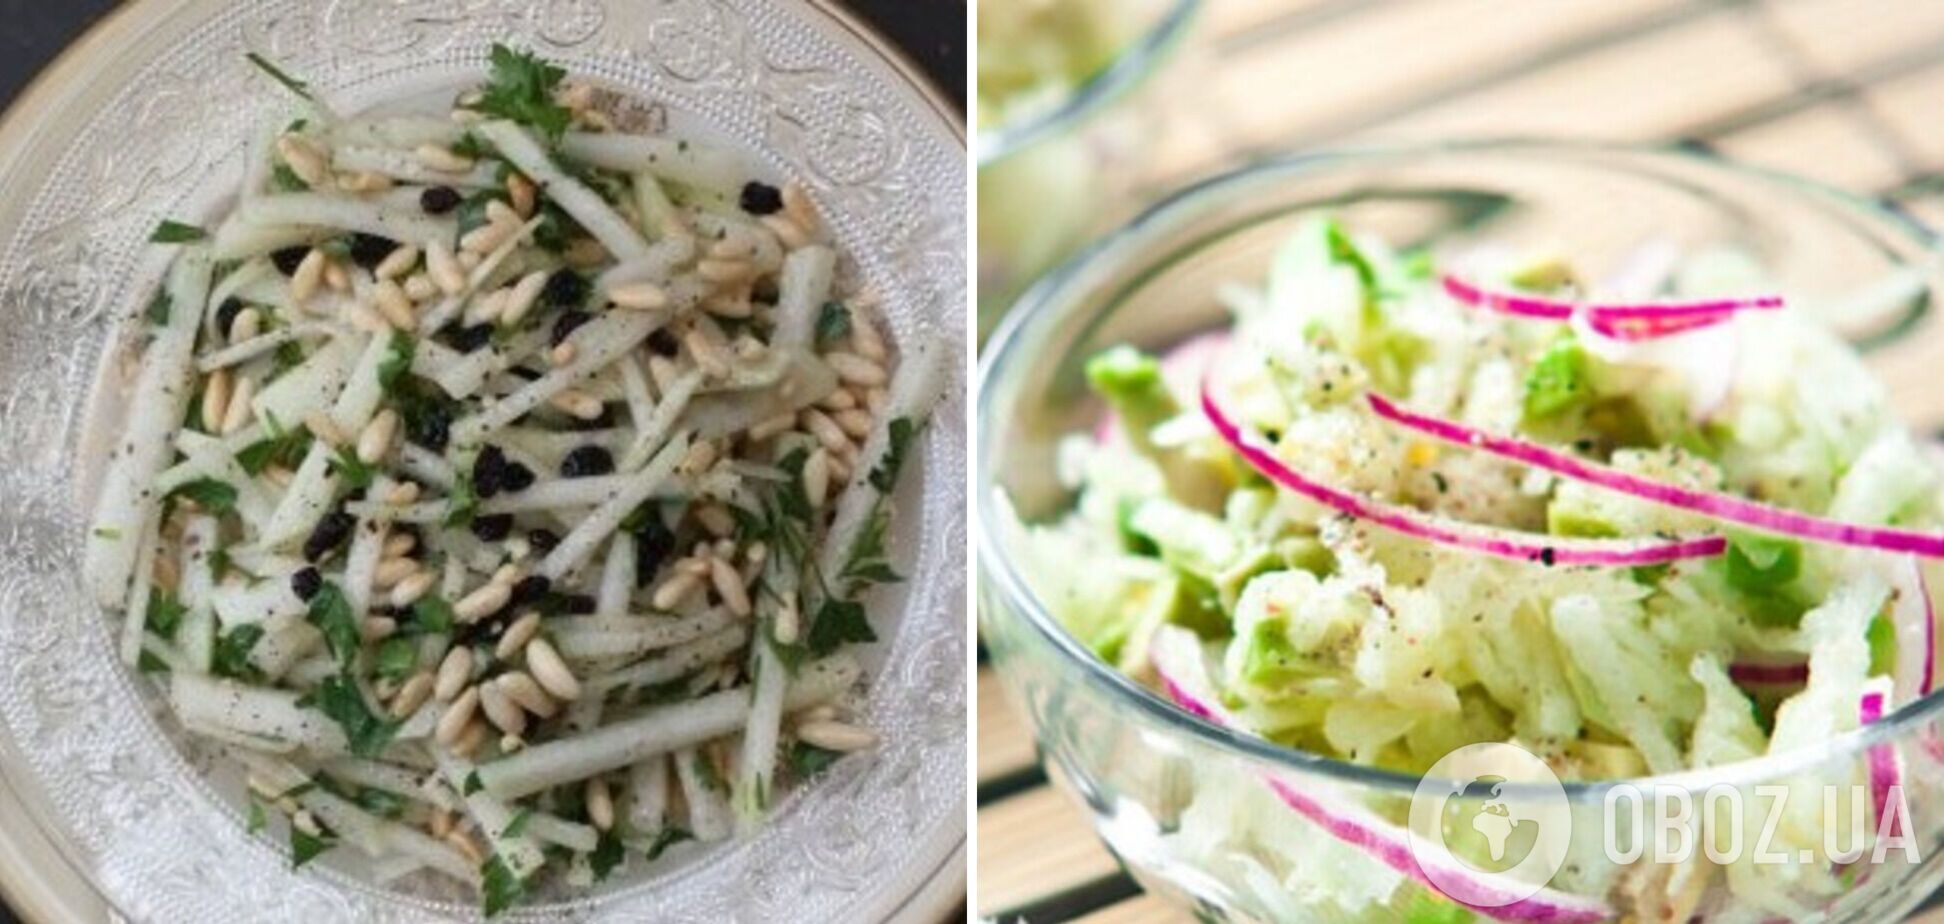 Сытный салат из двух ингредиентов для легкого обеда или ужина: из чего приготовить